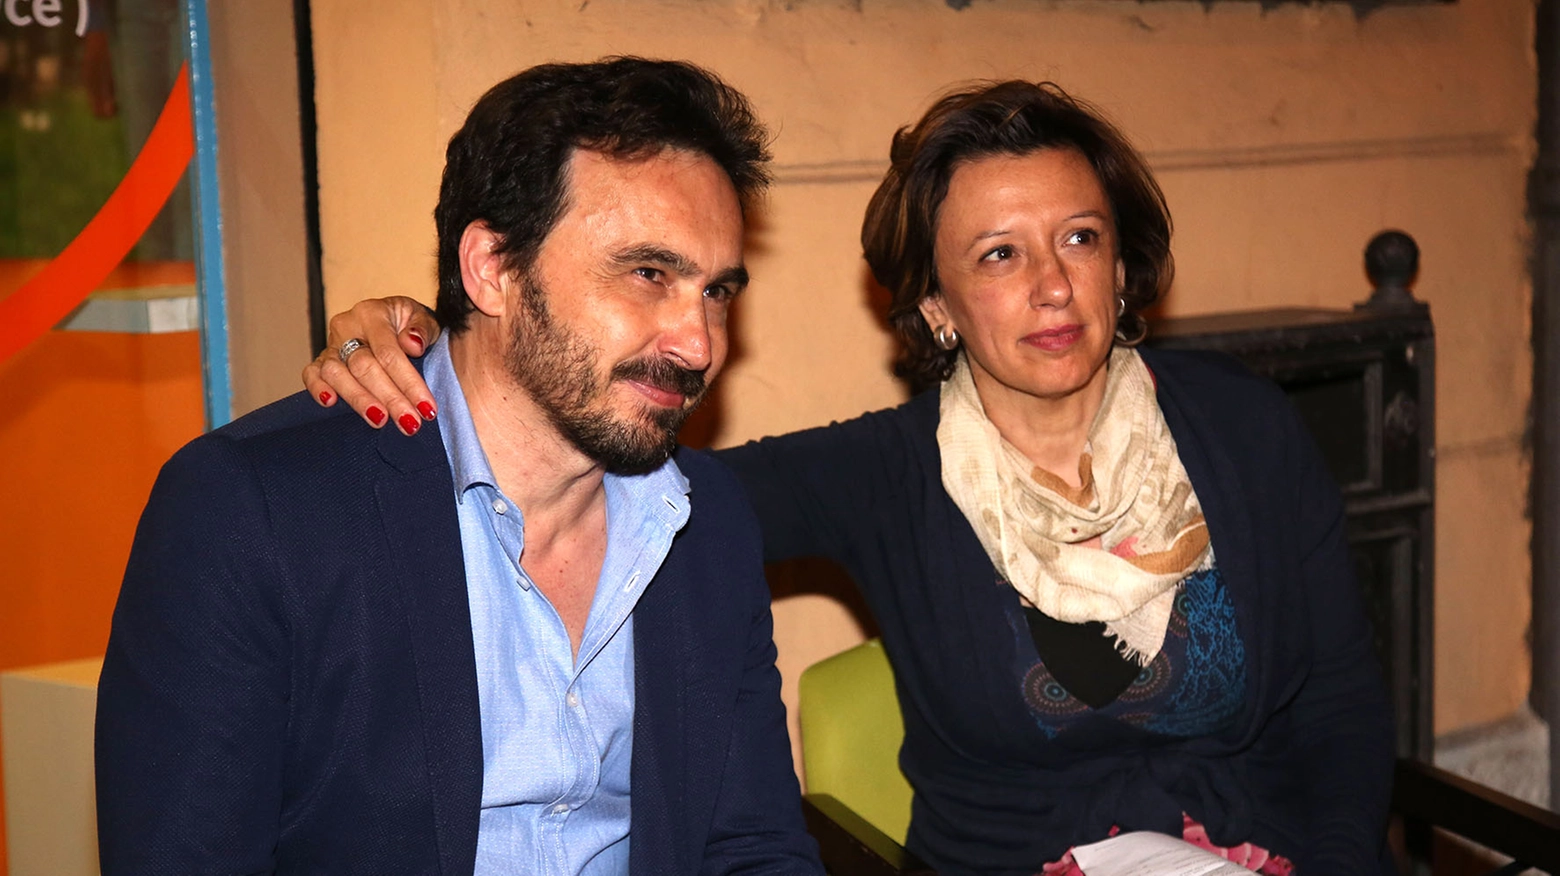 Manuela Sangiorgi con Claudio Frati, ex consigliere comunale grillino (Isolapress)